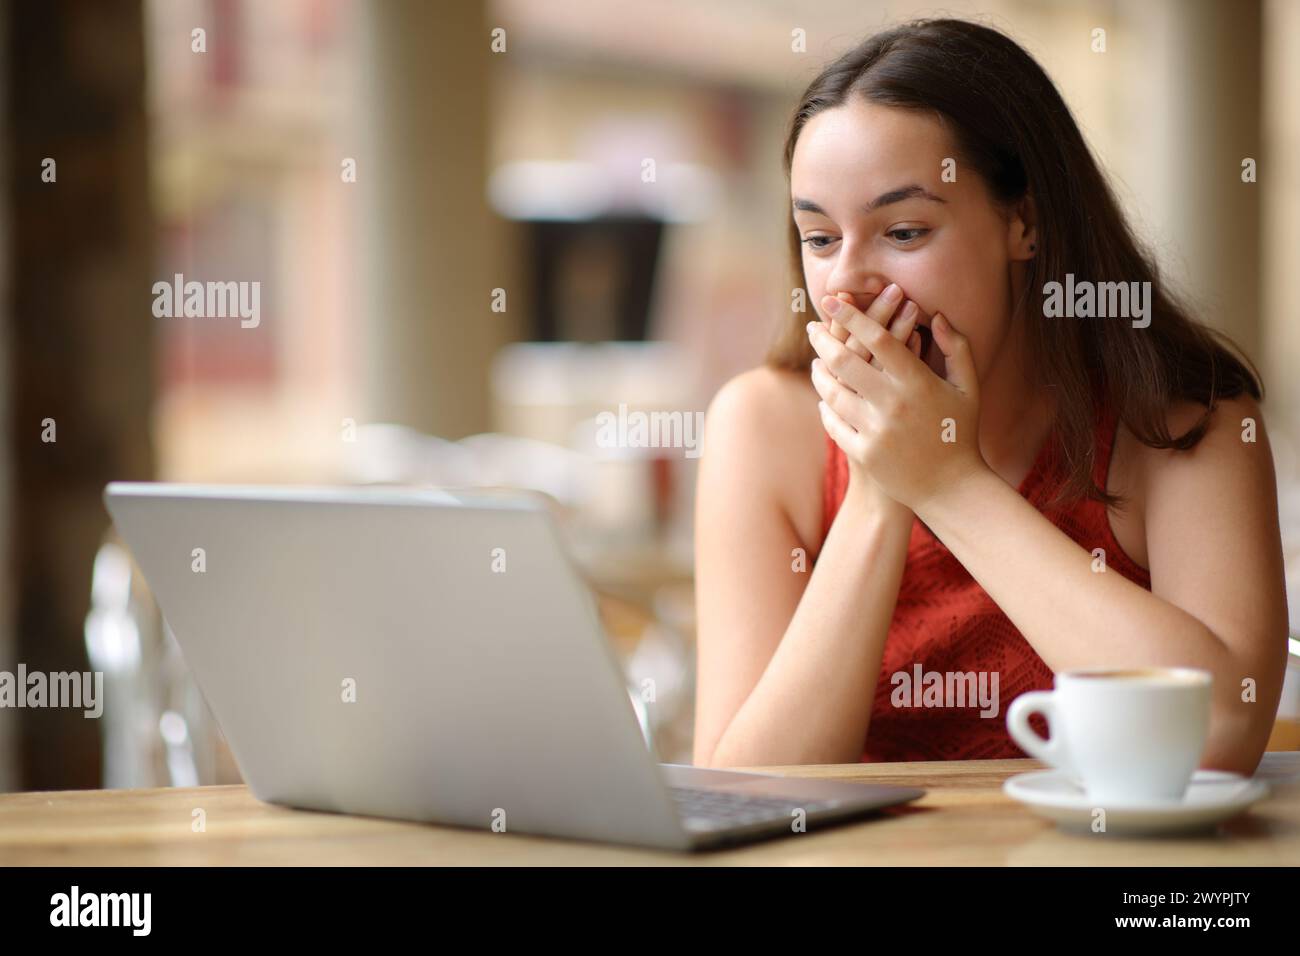 Staunte Frau, die auf einer Restaurantterrasse Laptop-Inhalte überprüft Stockfoto